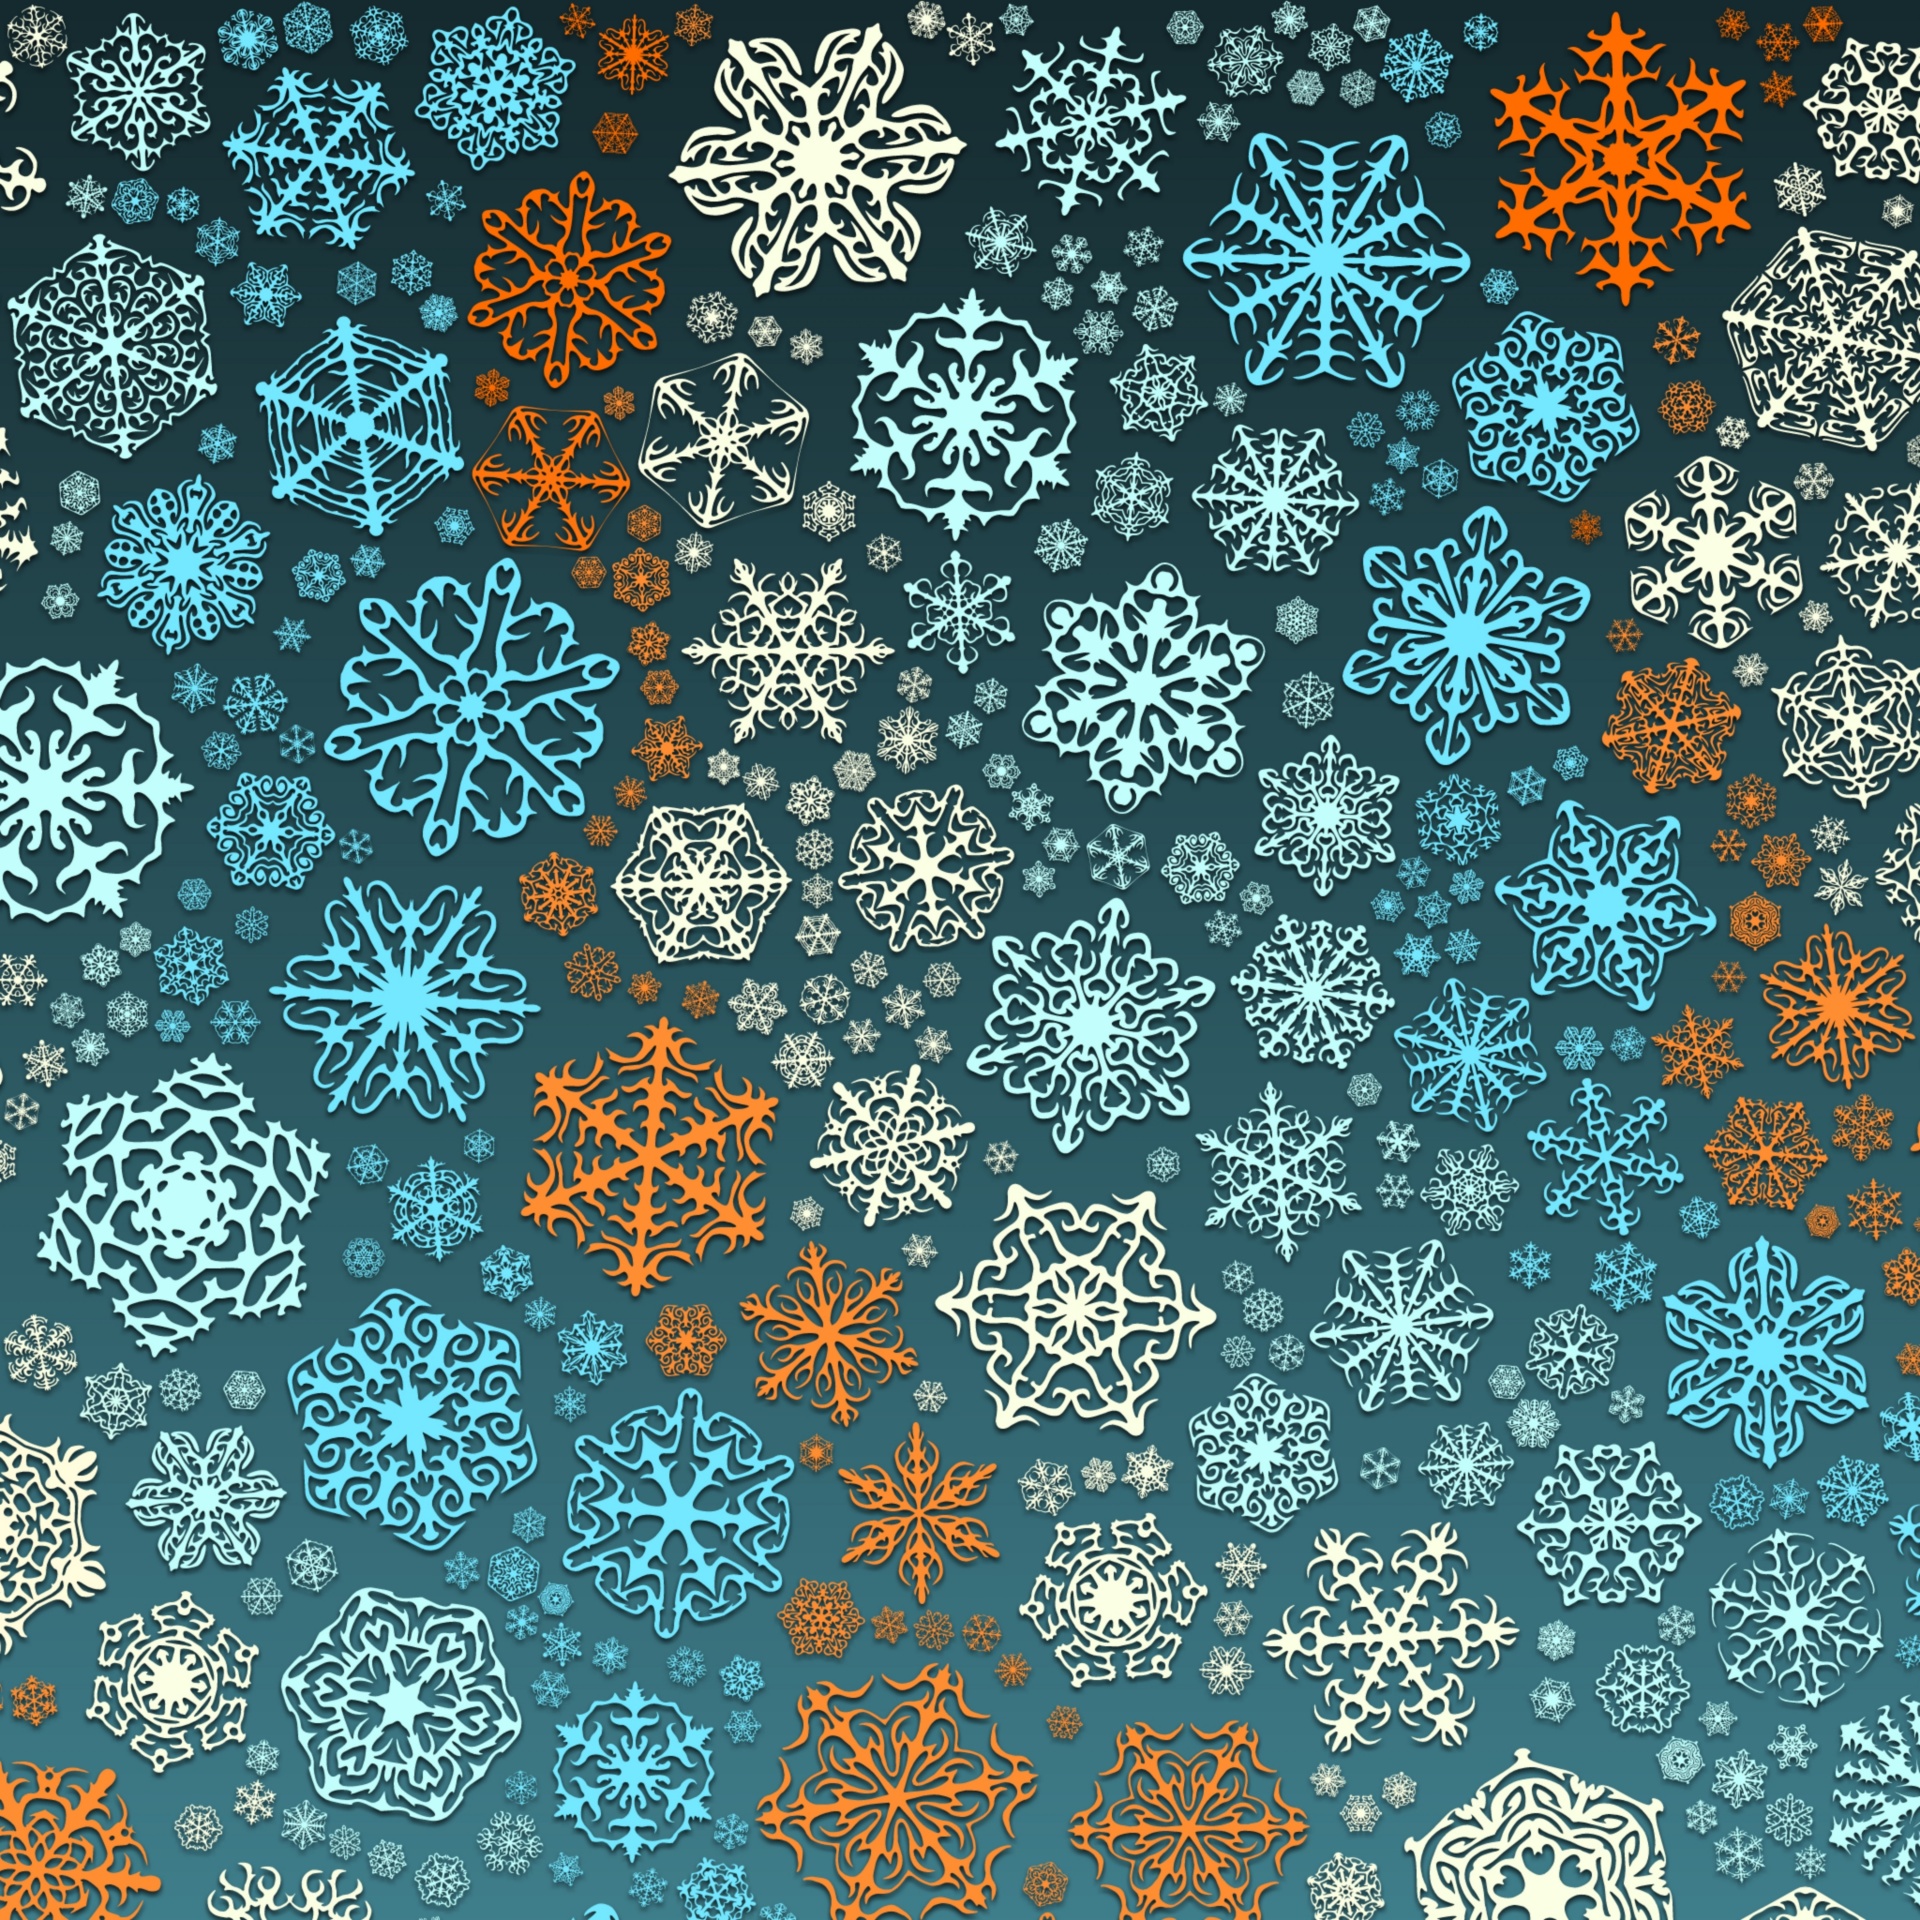 wallpaper flakes snowflakes free photo